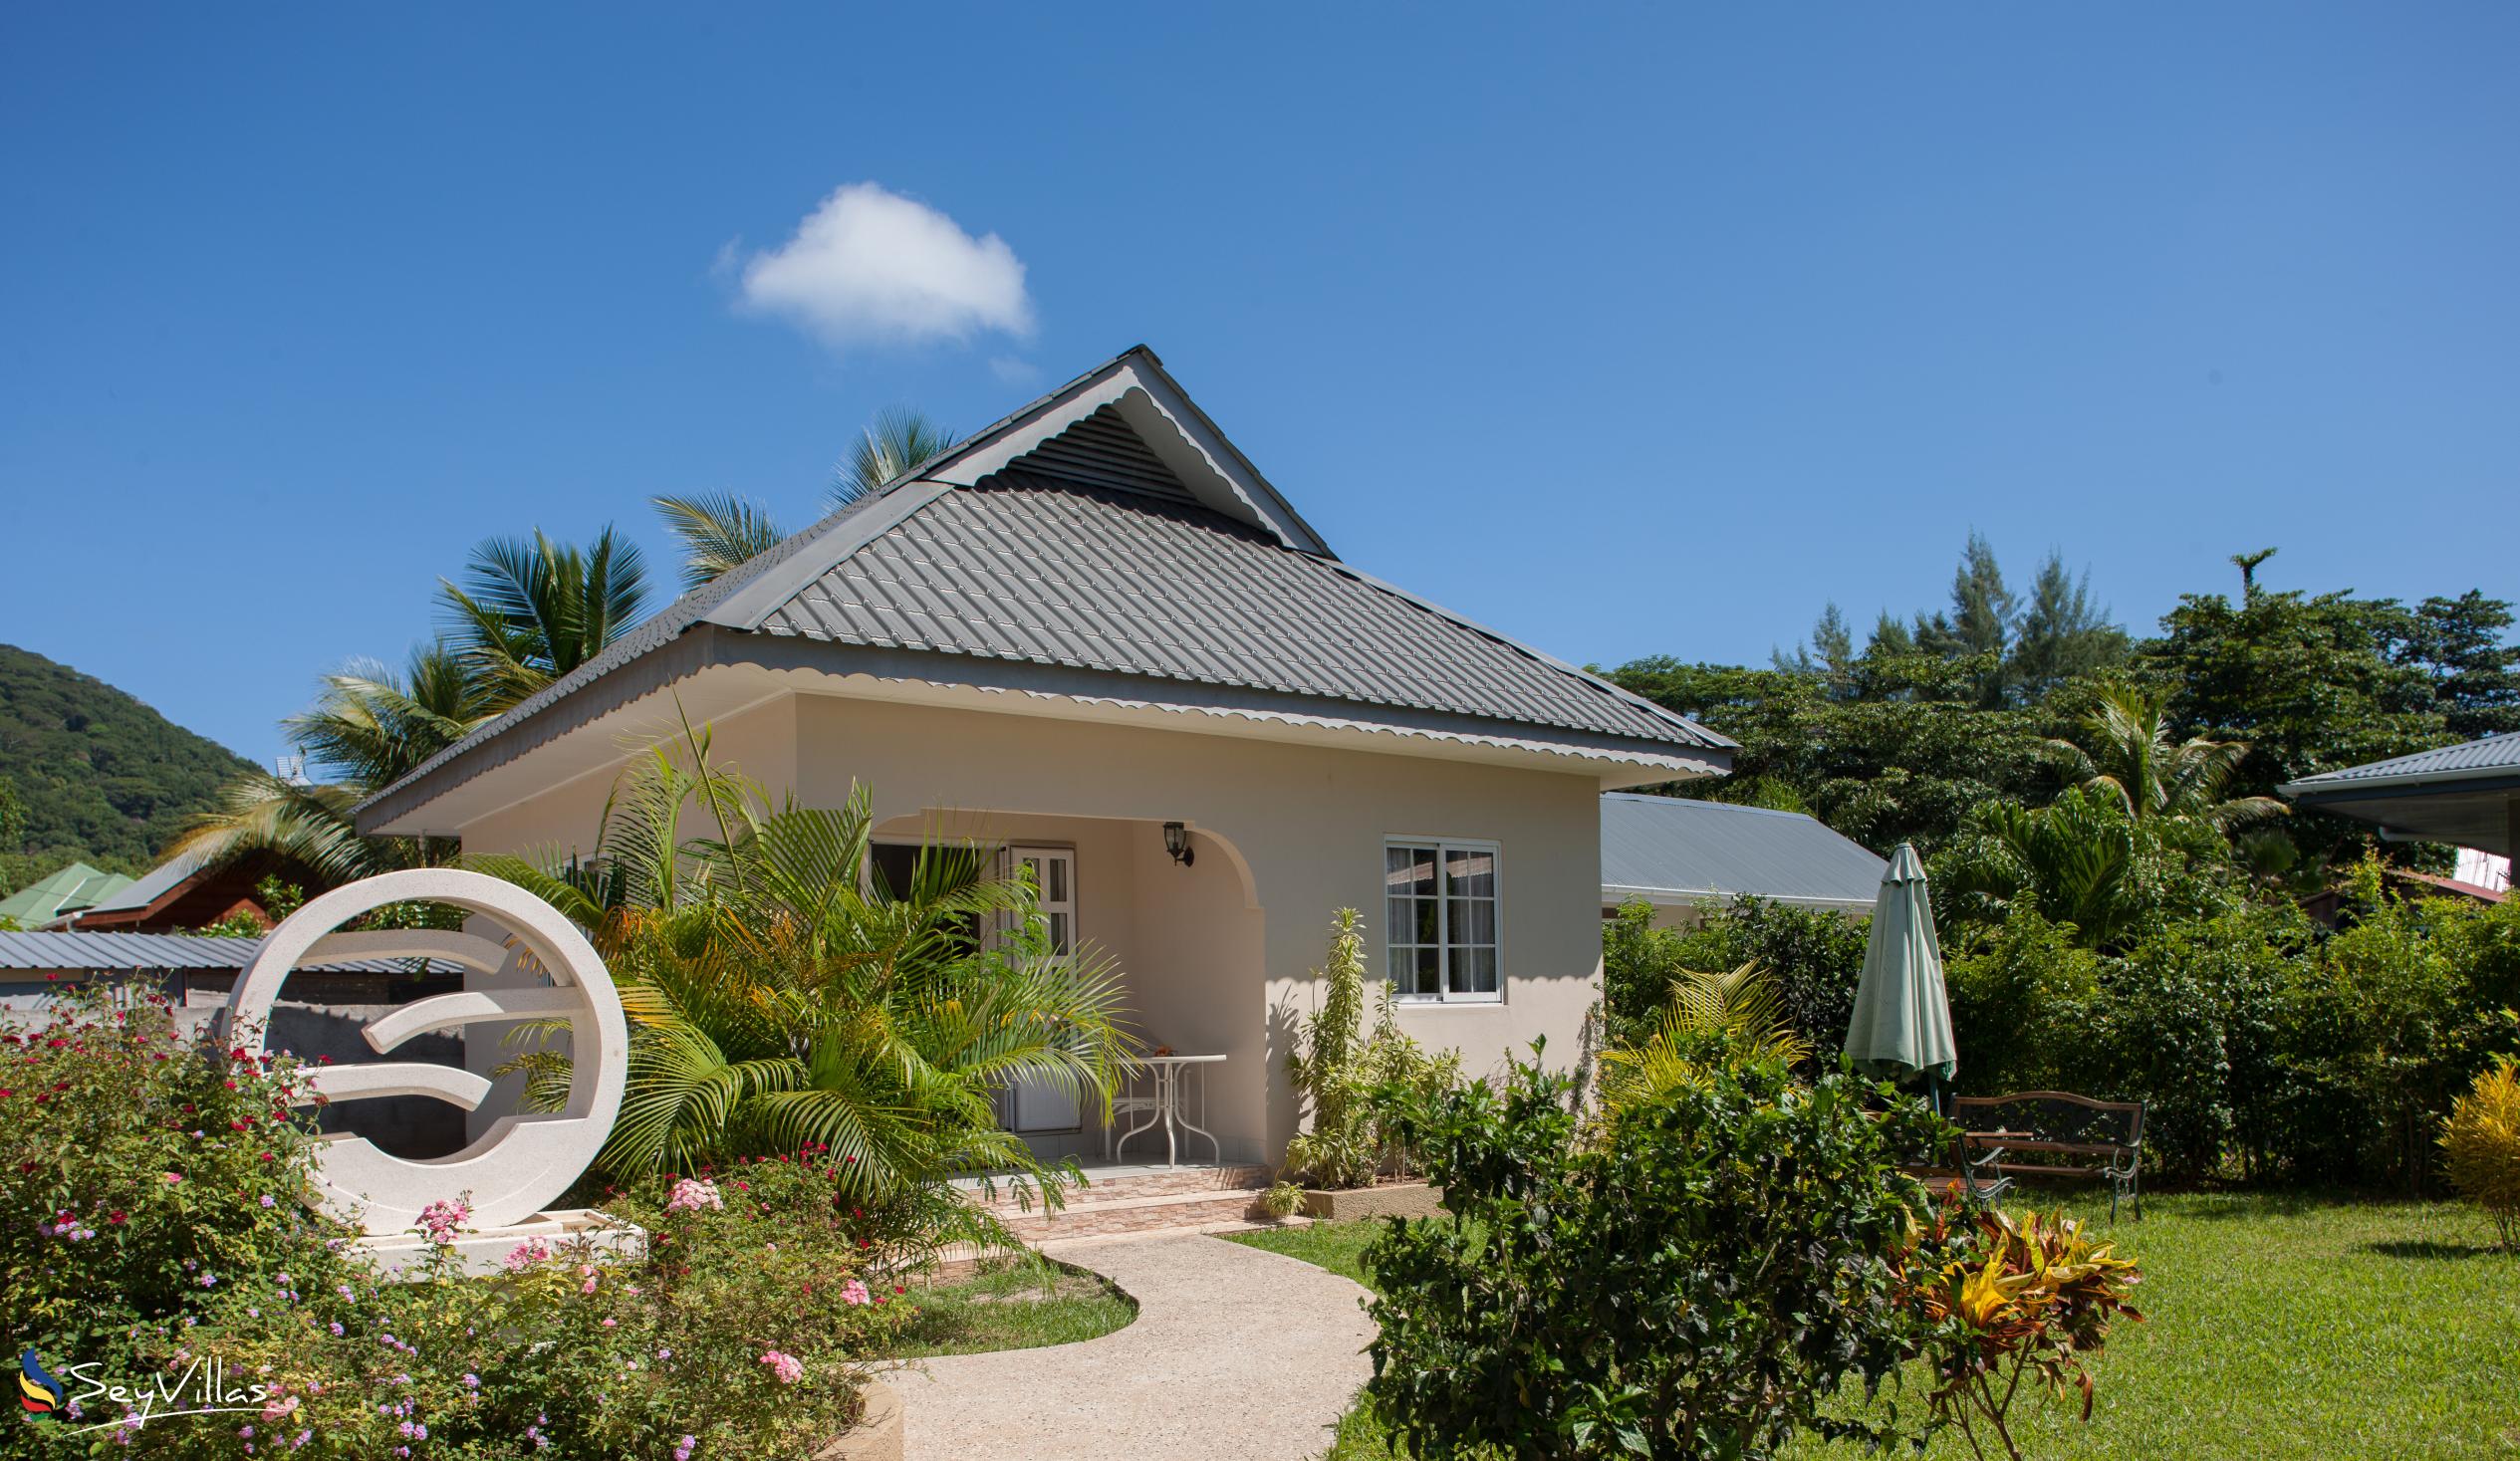 Foto 1: Villa Source D'Argent - Esterno - La Digue (Seychelles)